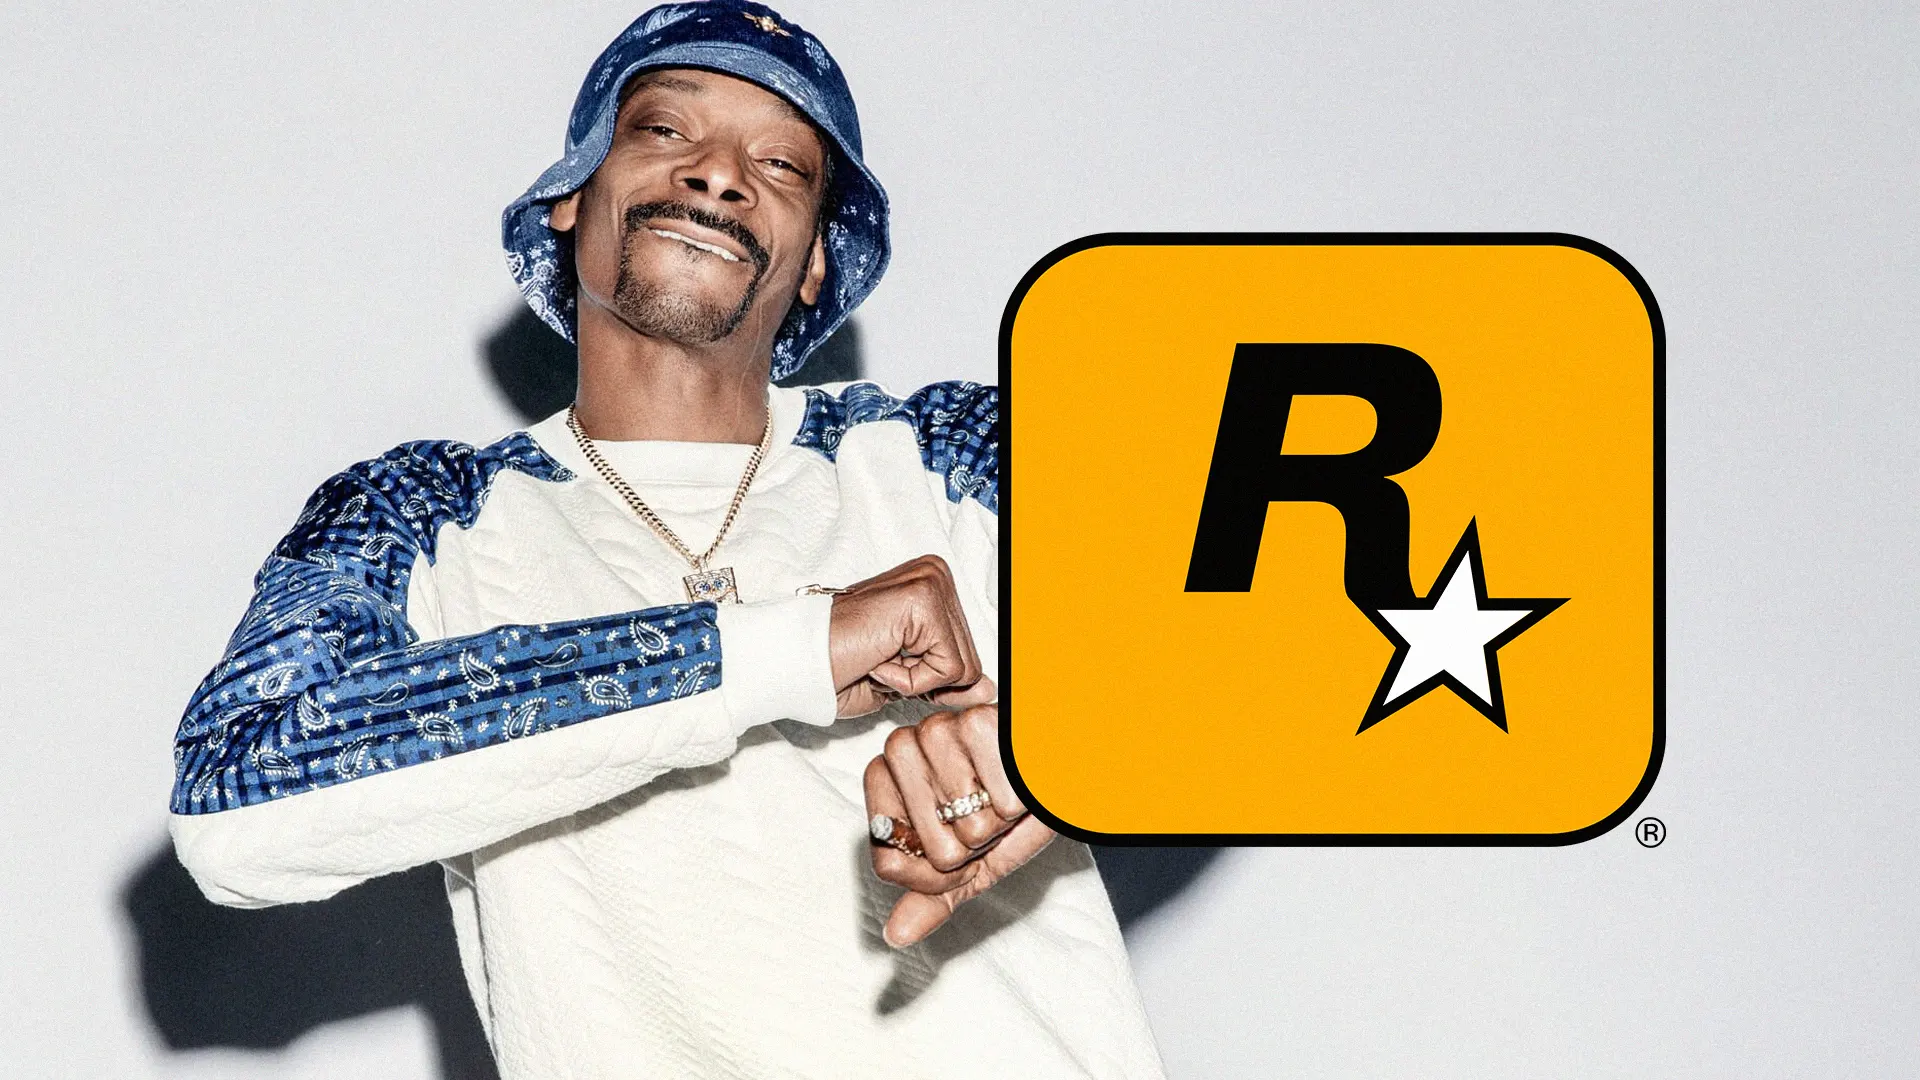 Em entrevista para a Rolling Stone, Snoop Dogg confirmou que Dr. Dre está produzindo uma música para o próximo GTA da Rockstar Games.